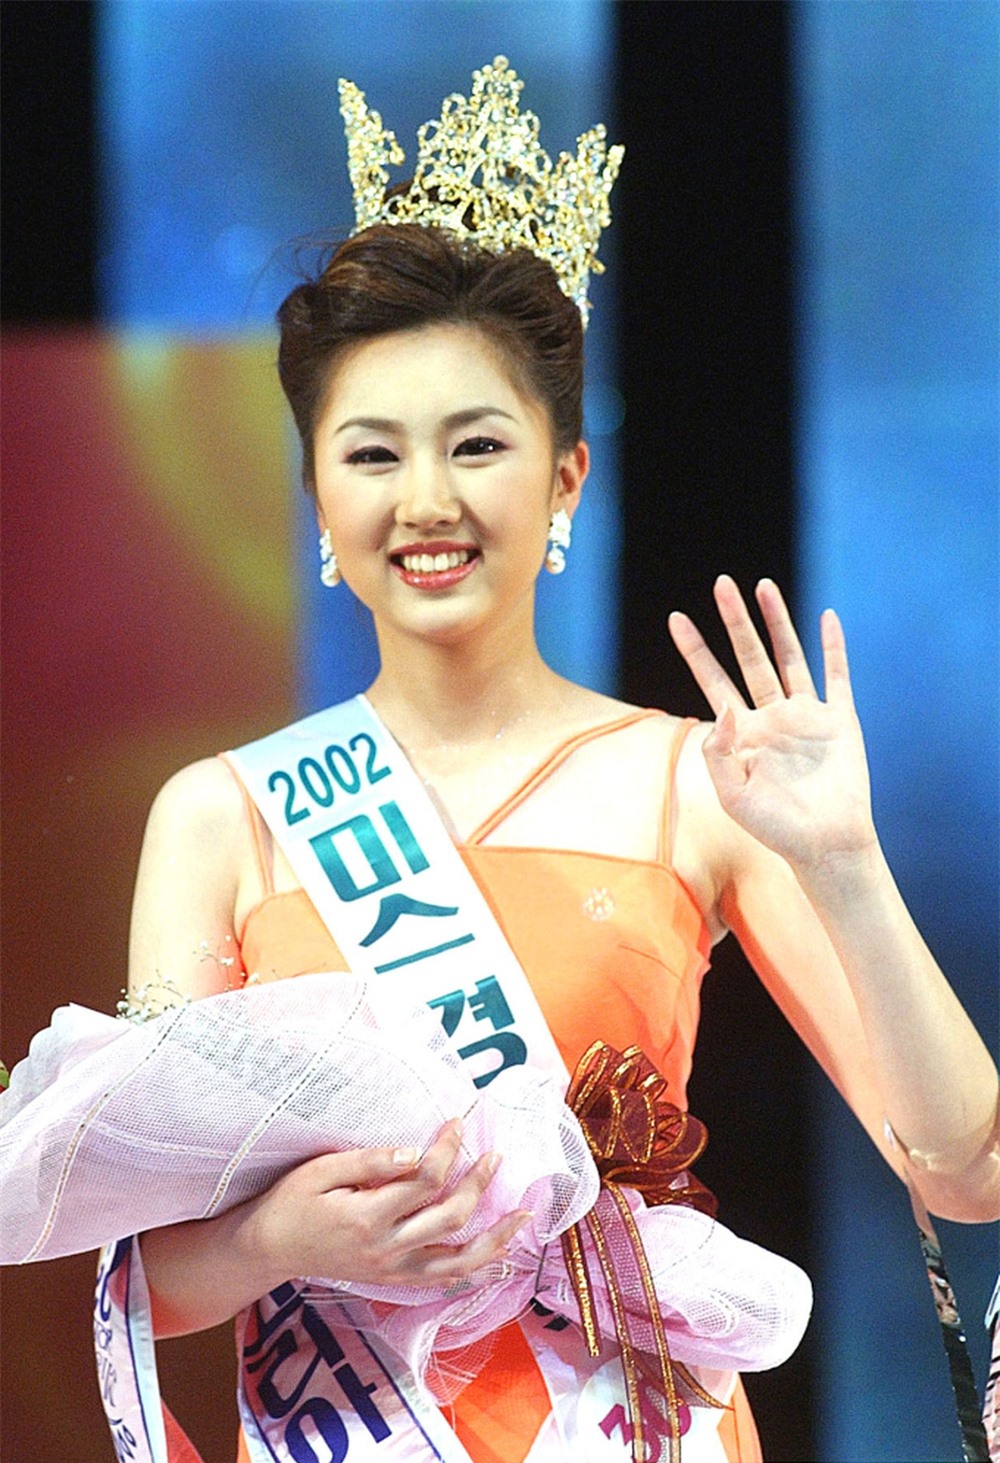 Hoa hậu học vị cao nhất Hàn Quốc tái xuất sau 20 năm, nhan sắc gây xôn xao dư luận vì trẻ đẹp hơn cả lúc đăng quang - Ảnh 5.